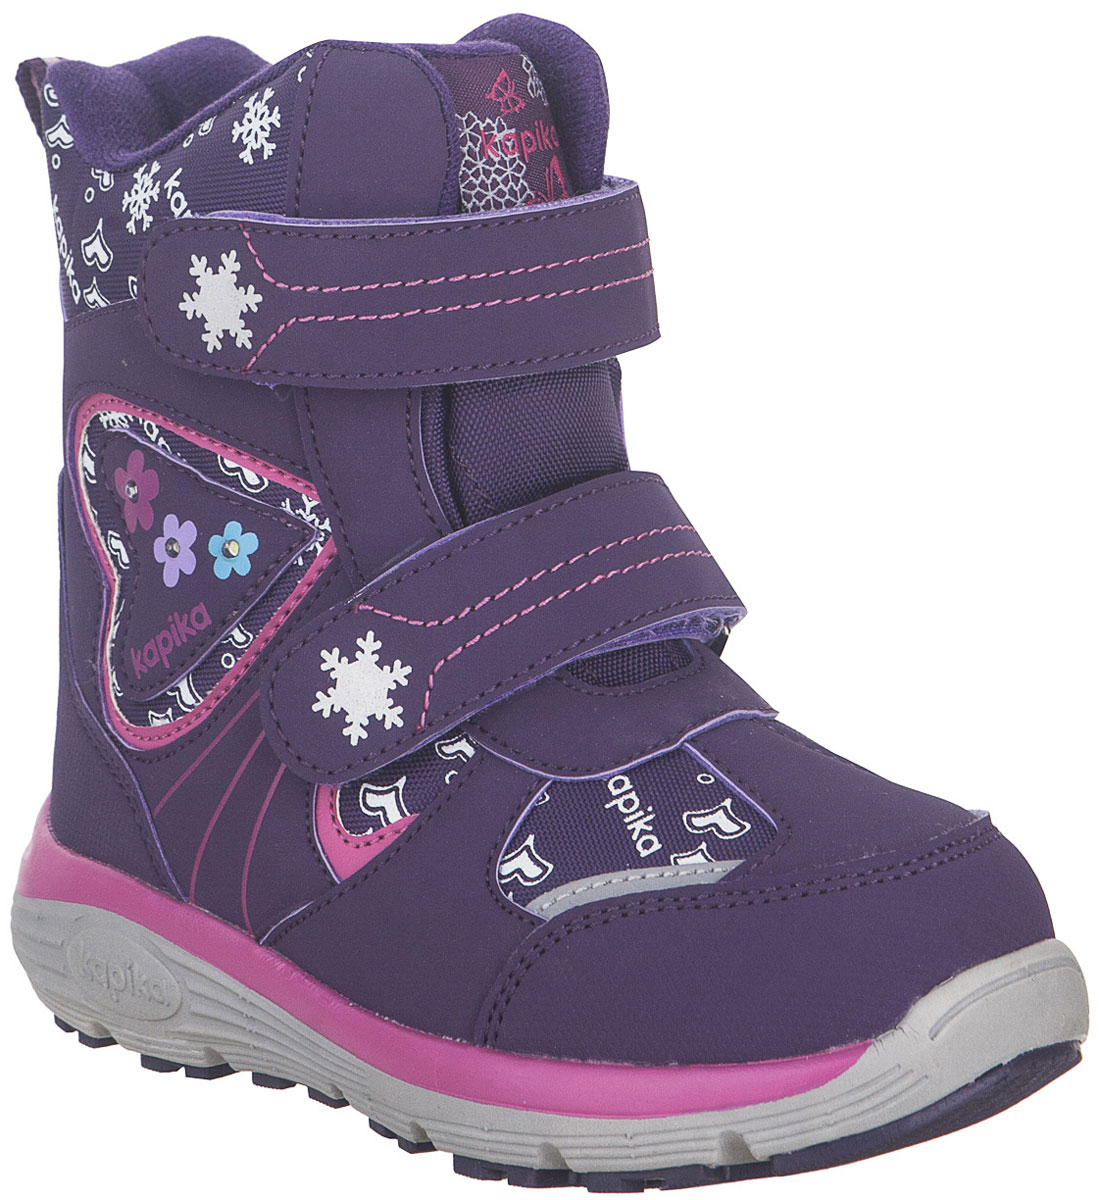 Ботинки для девочки Kapika, цвет: фиолетовый. 42256-2. Размер 28